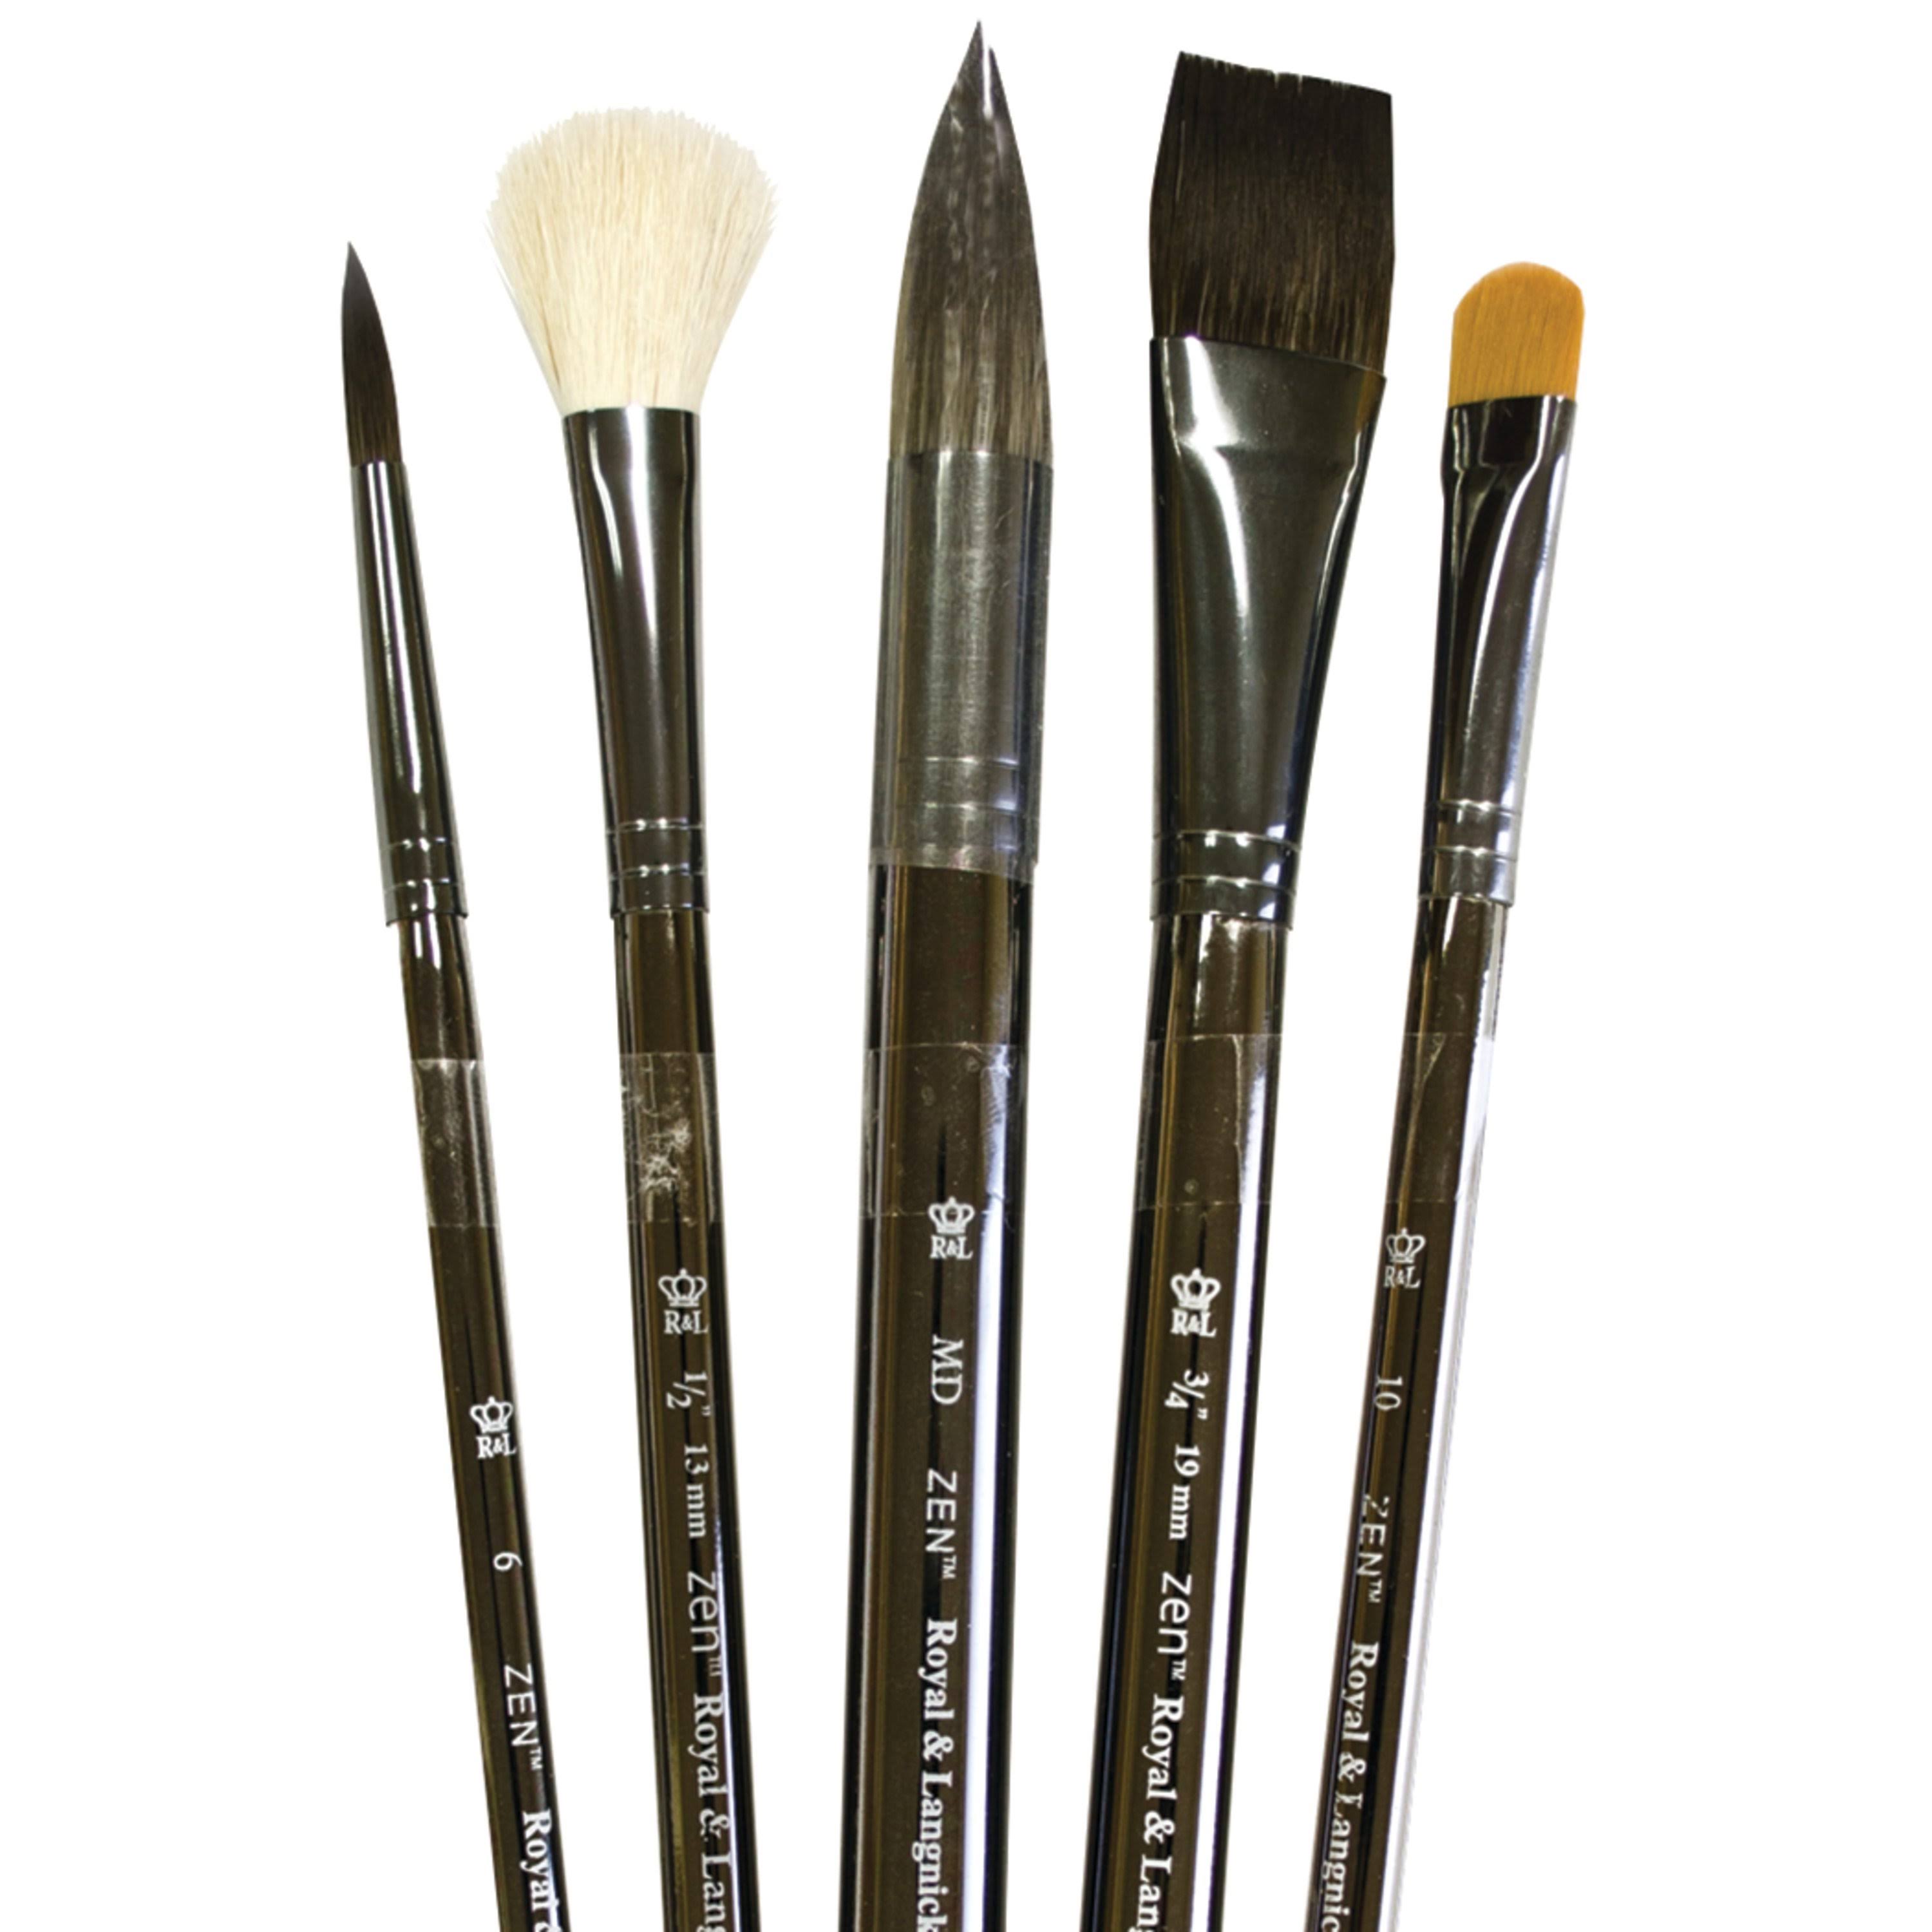 Royal Brush Zen Brush Set, Series 83, Watercolor